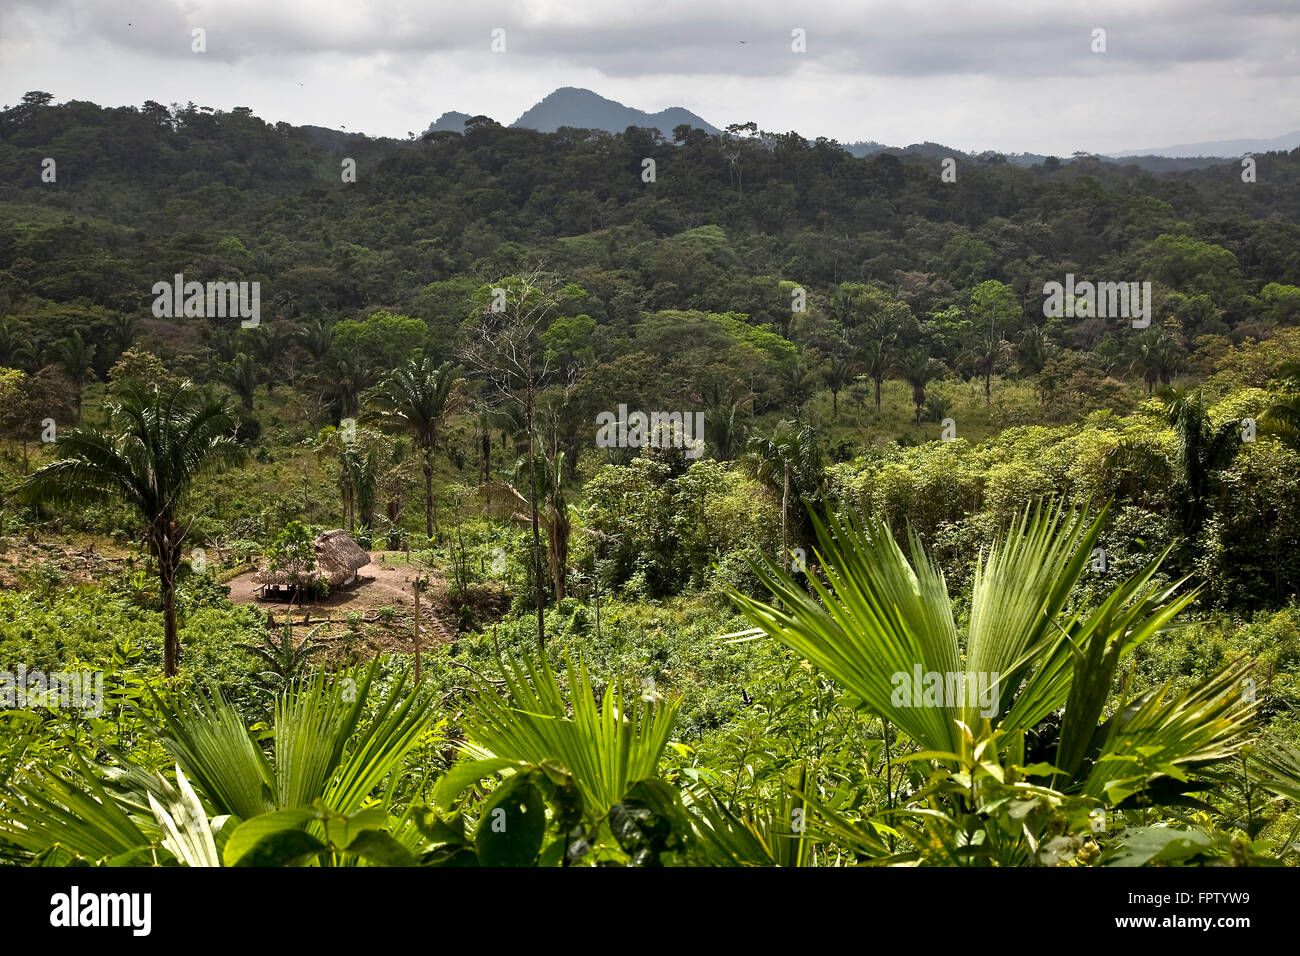 Forest in Vaquilla, Castilla del oro, Panamá Stock Photo